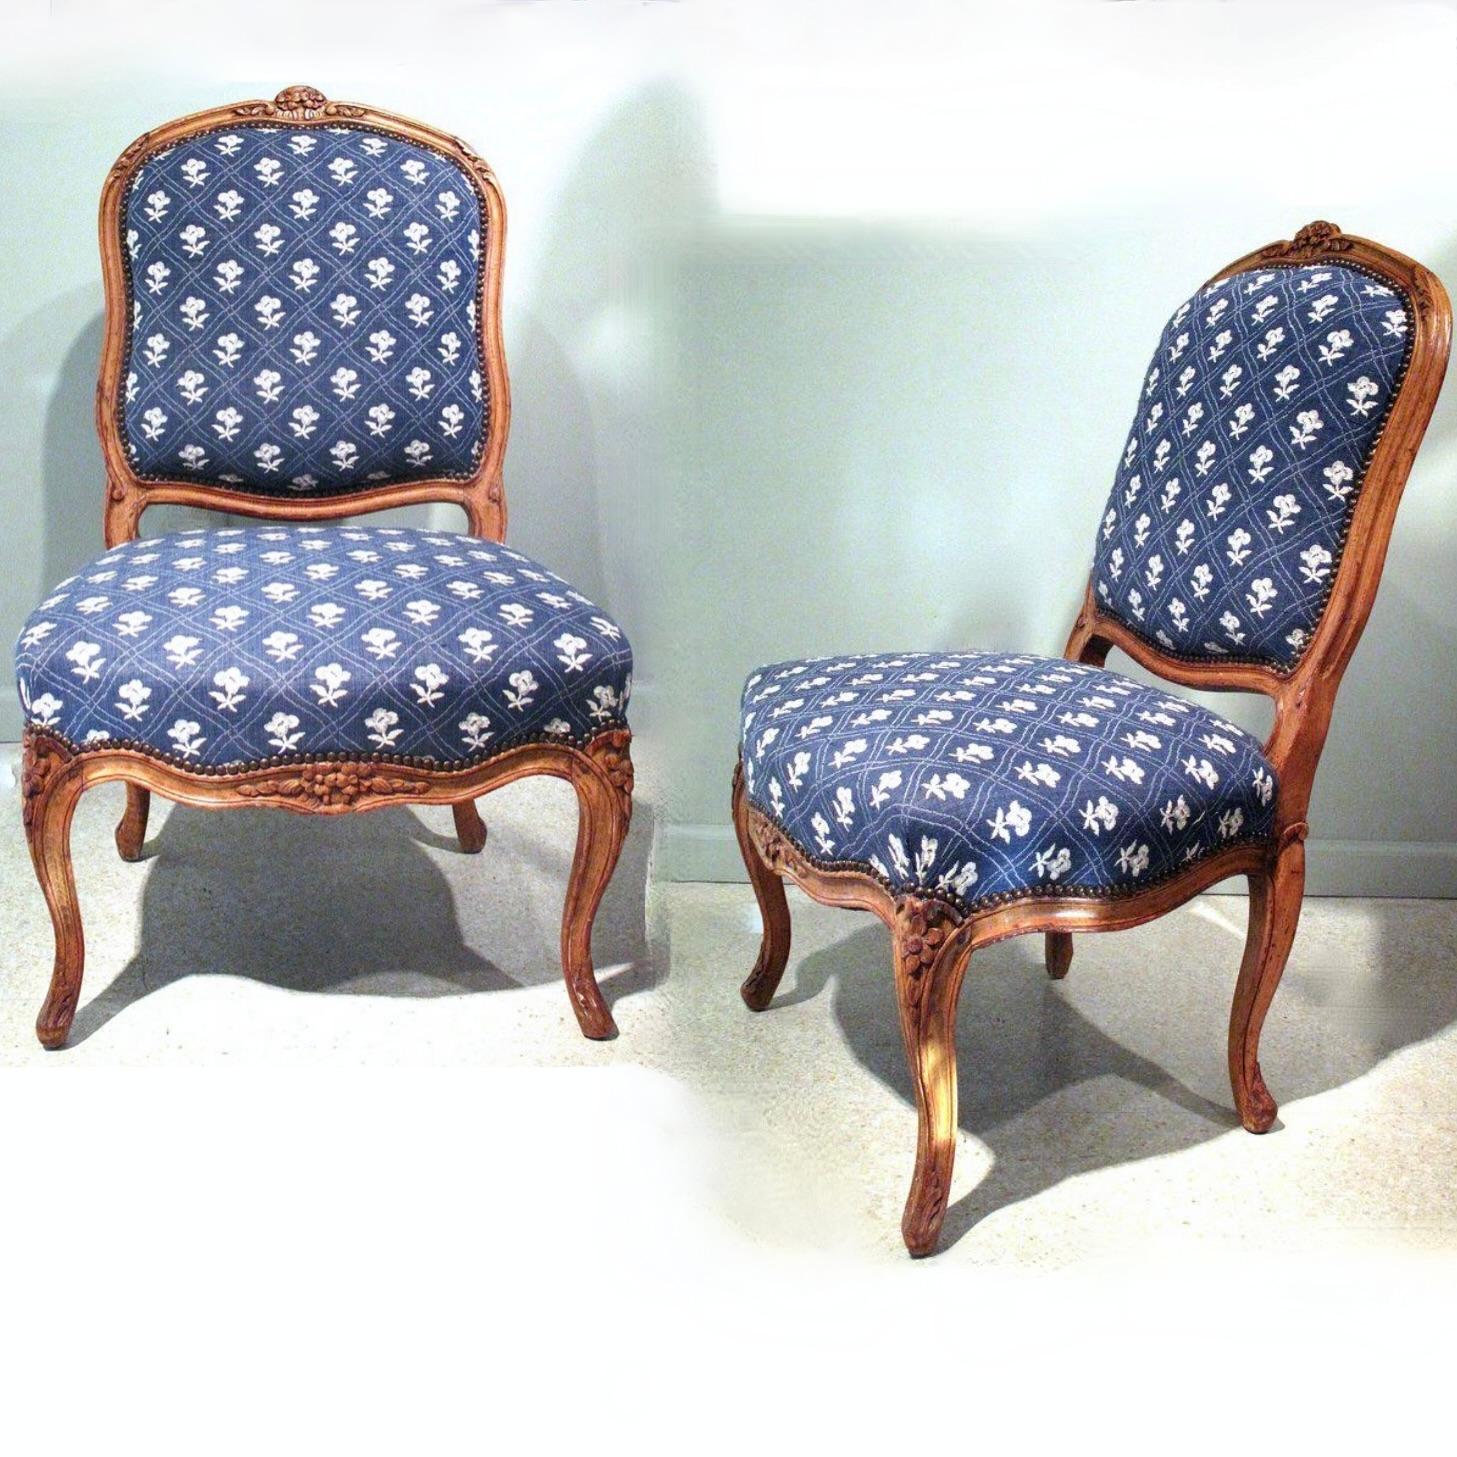 Paire de chaises françaises du milieu du XVIIIe siècle. Les châssis en hêtre naturel sont robustes et confortables. Les lignes serpentines sont bien équilibrées tout au long du dossier et de l'assise, ponctuées par des sculptures florales et